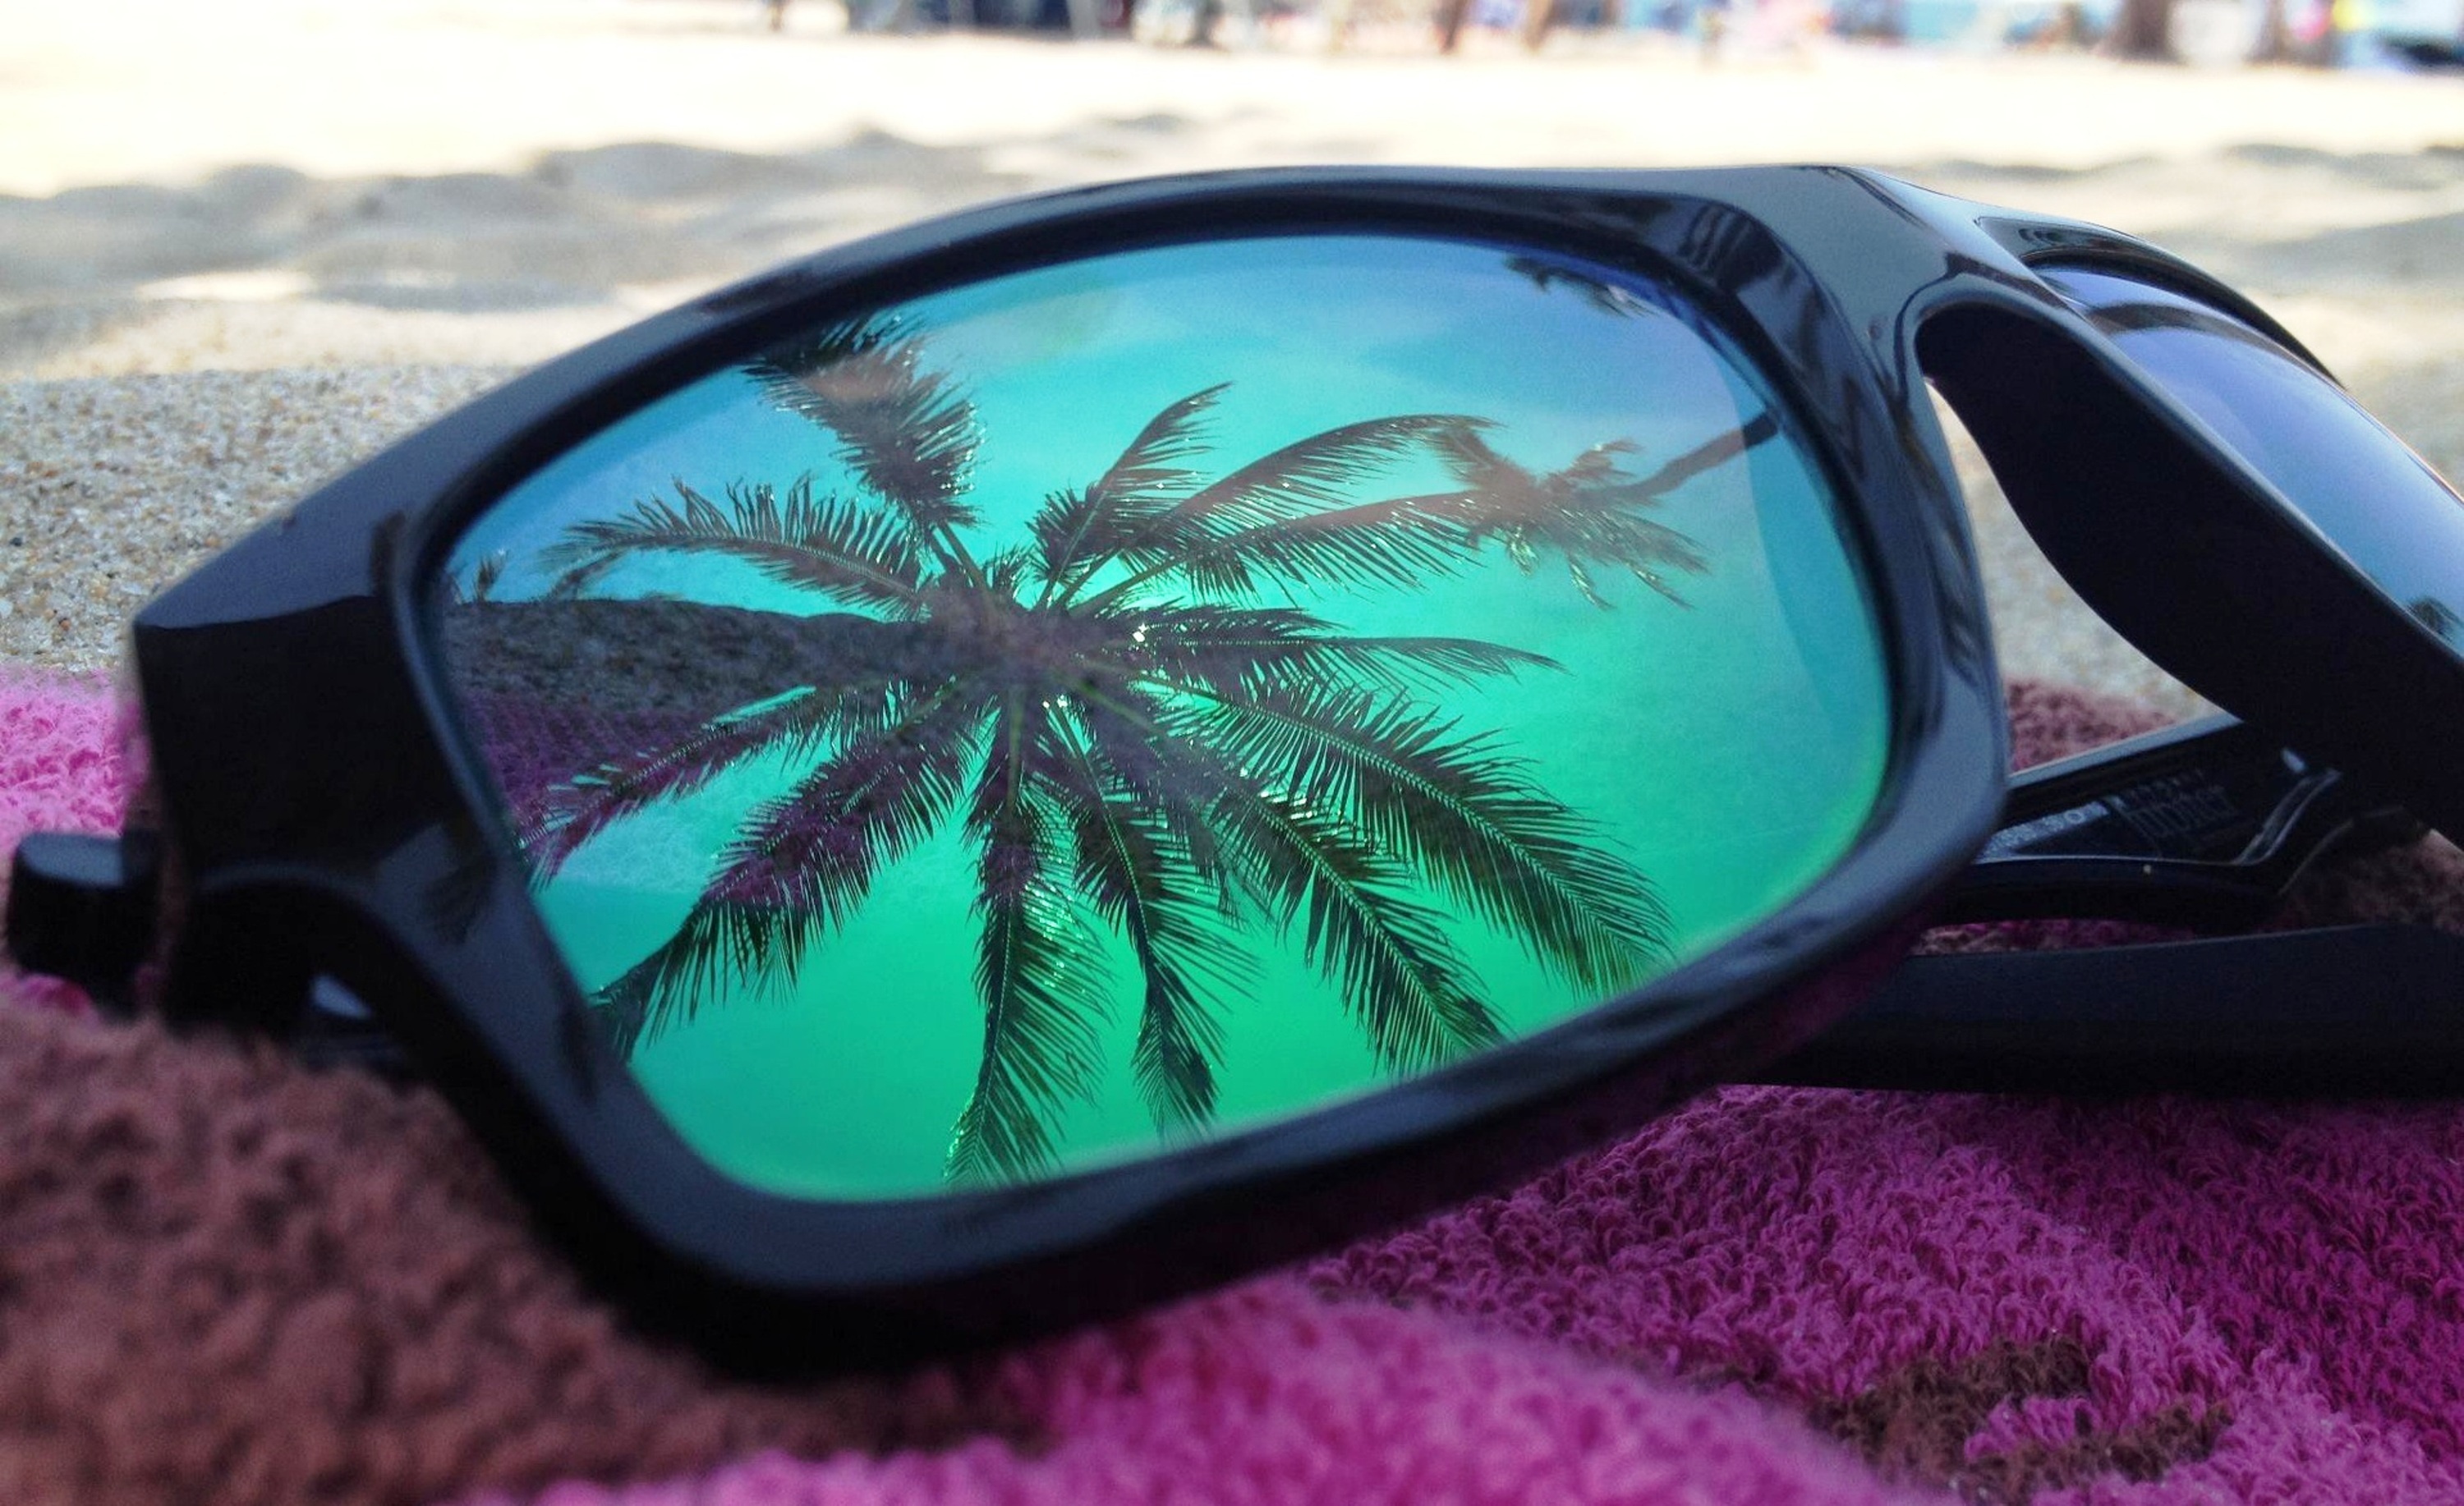 Фото отражение в очках. Очки. Солнцезащитные очки. Летние очки. Солнцезащитные очки на пляже.